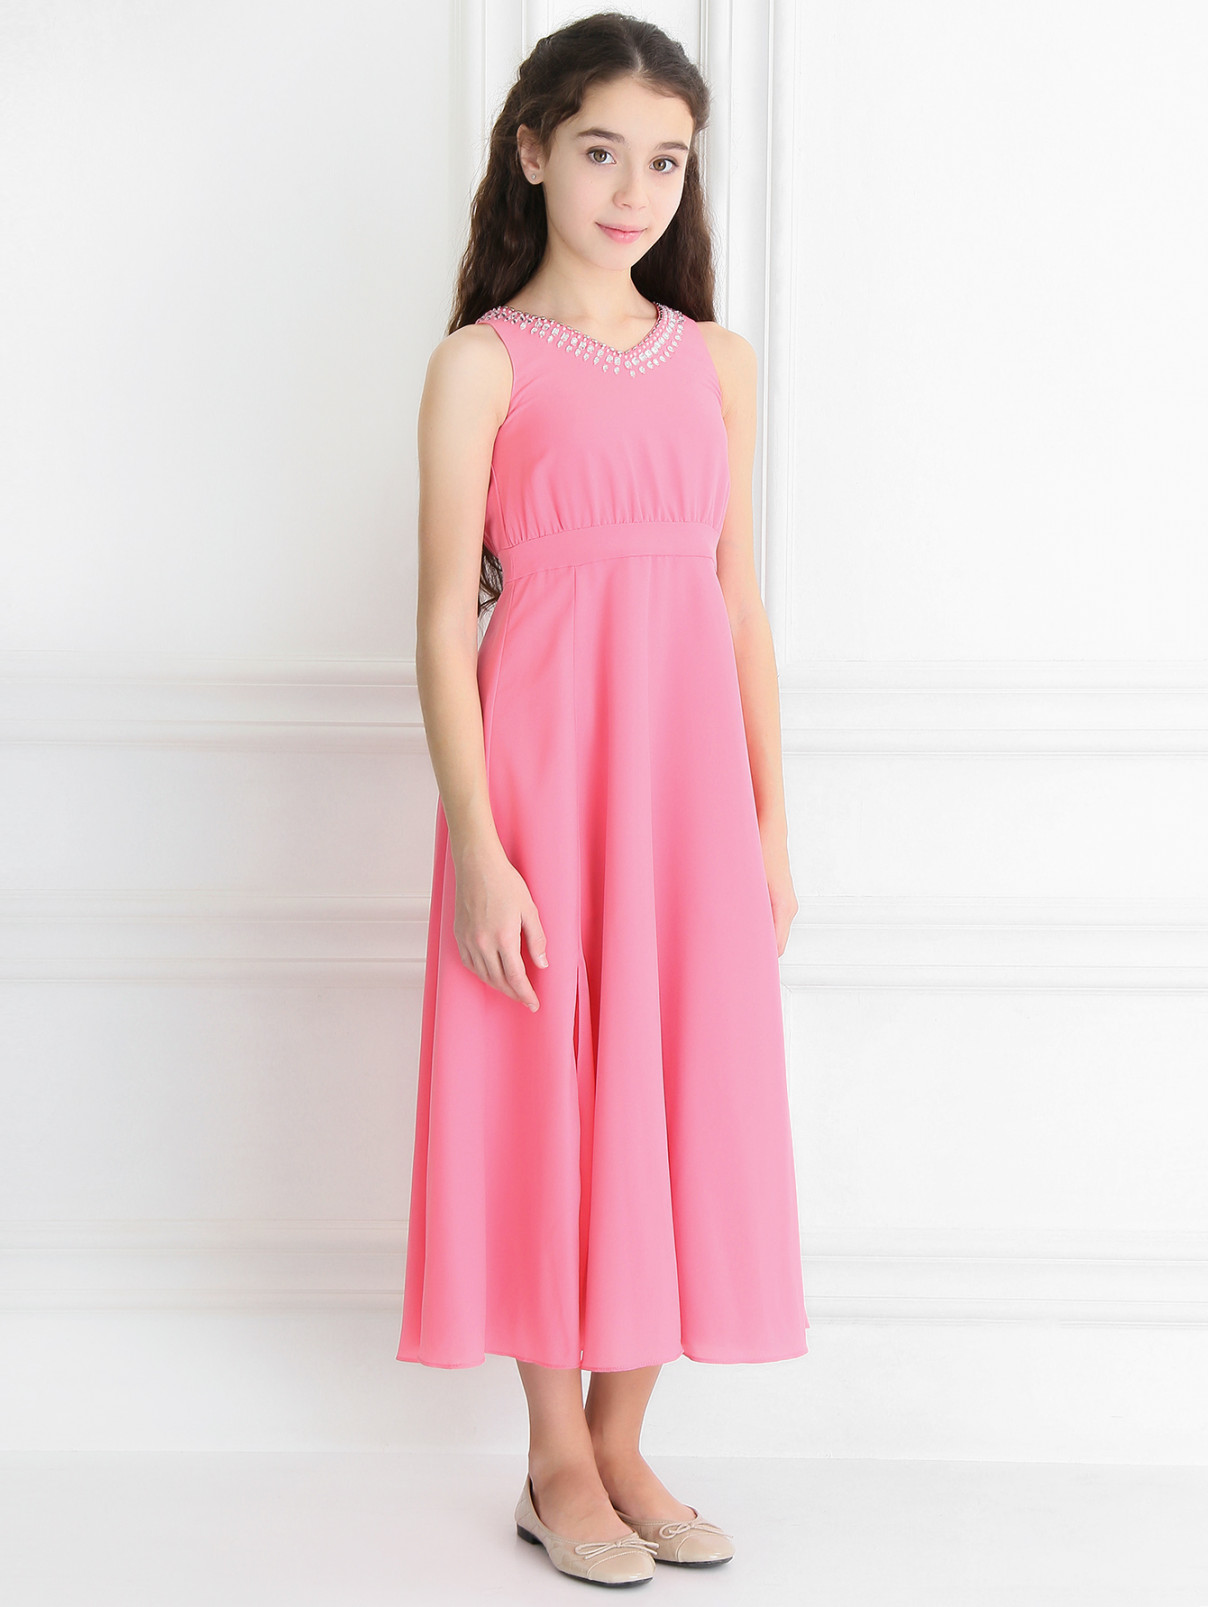 Платье-макси с разрезами декорированное кристаллами Pinko Up  –  Модель Общий вид  – Цвет:  Розовый